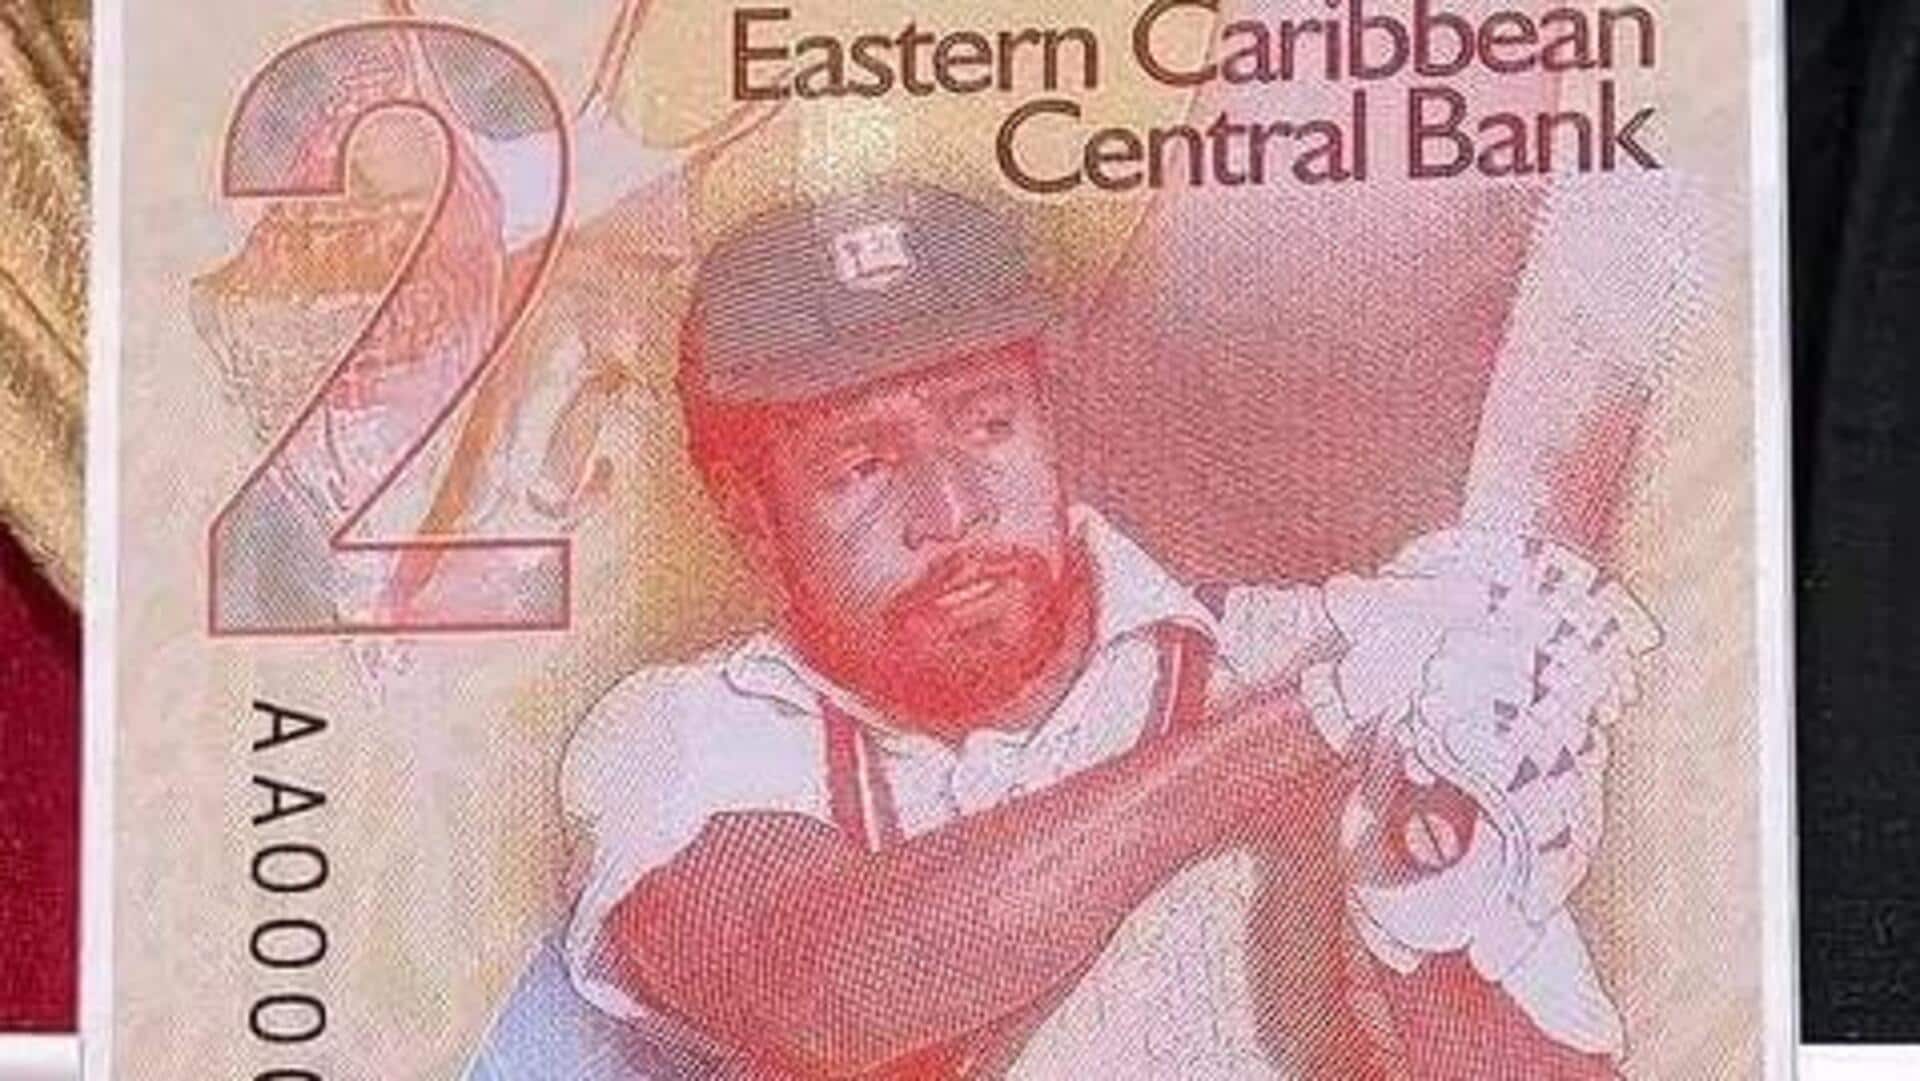 विवियन रिचर्ड्स के सम्मान में कैरेबियन सेंट्रल बैंक ने जारी किया 2 डॉलर का नोट